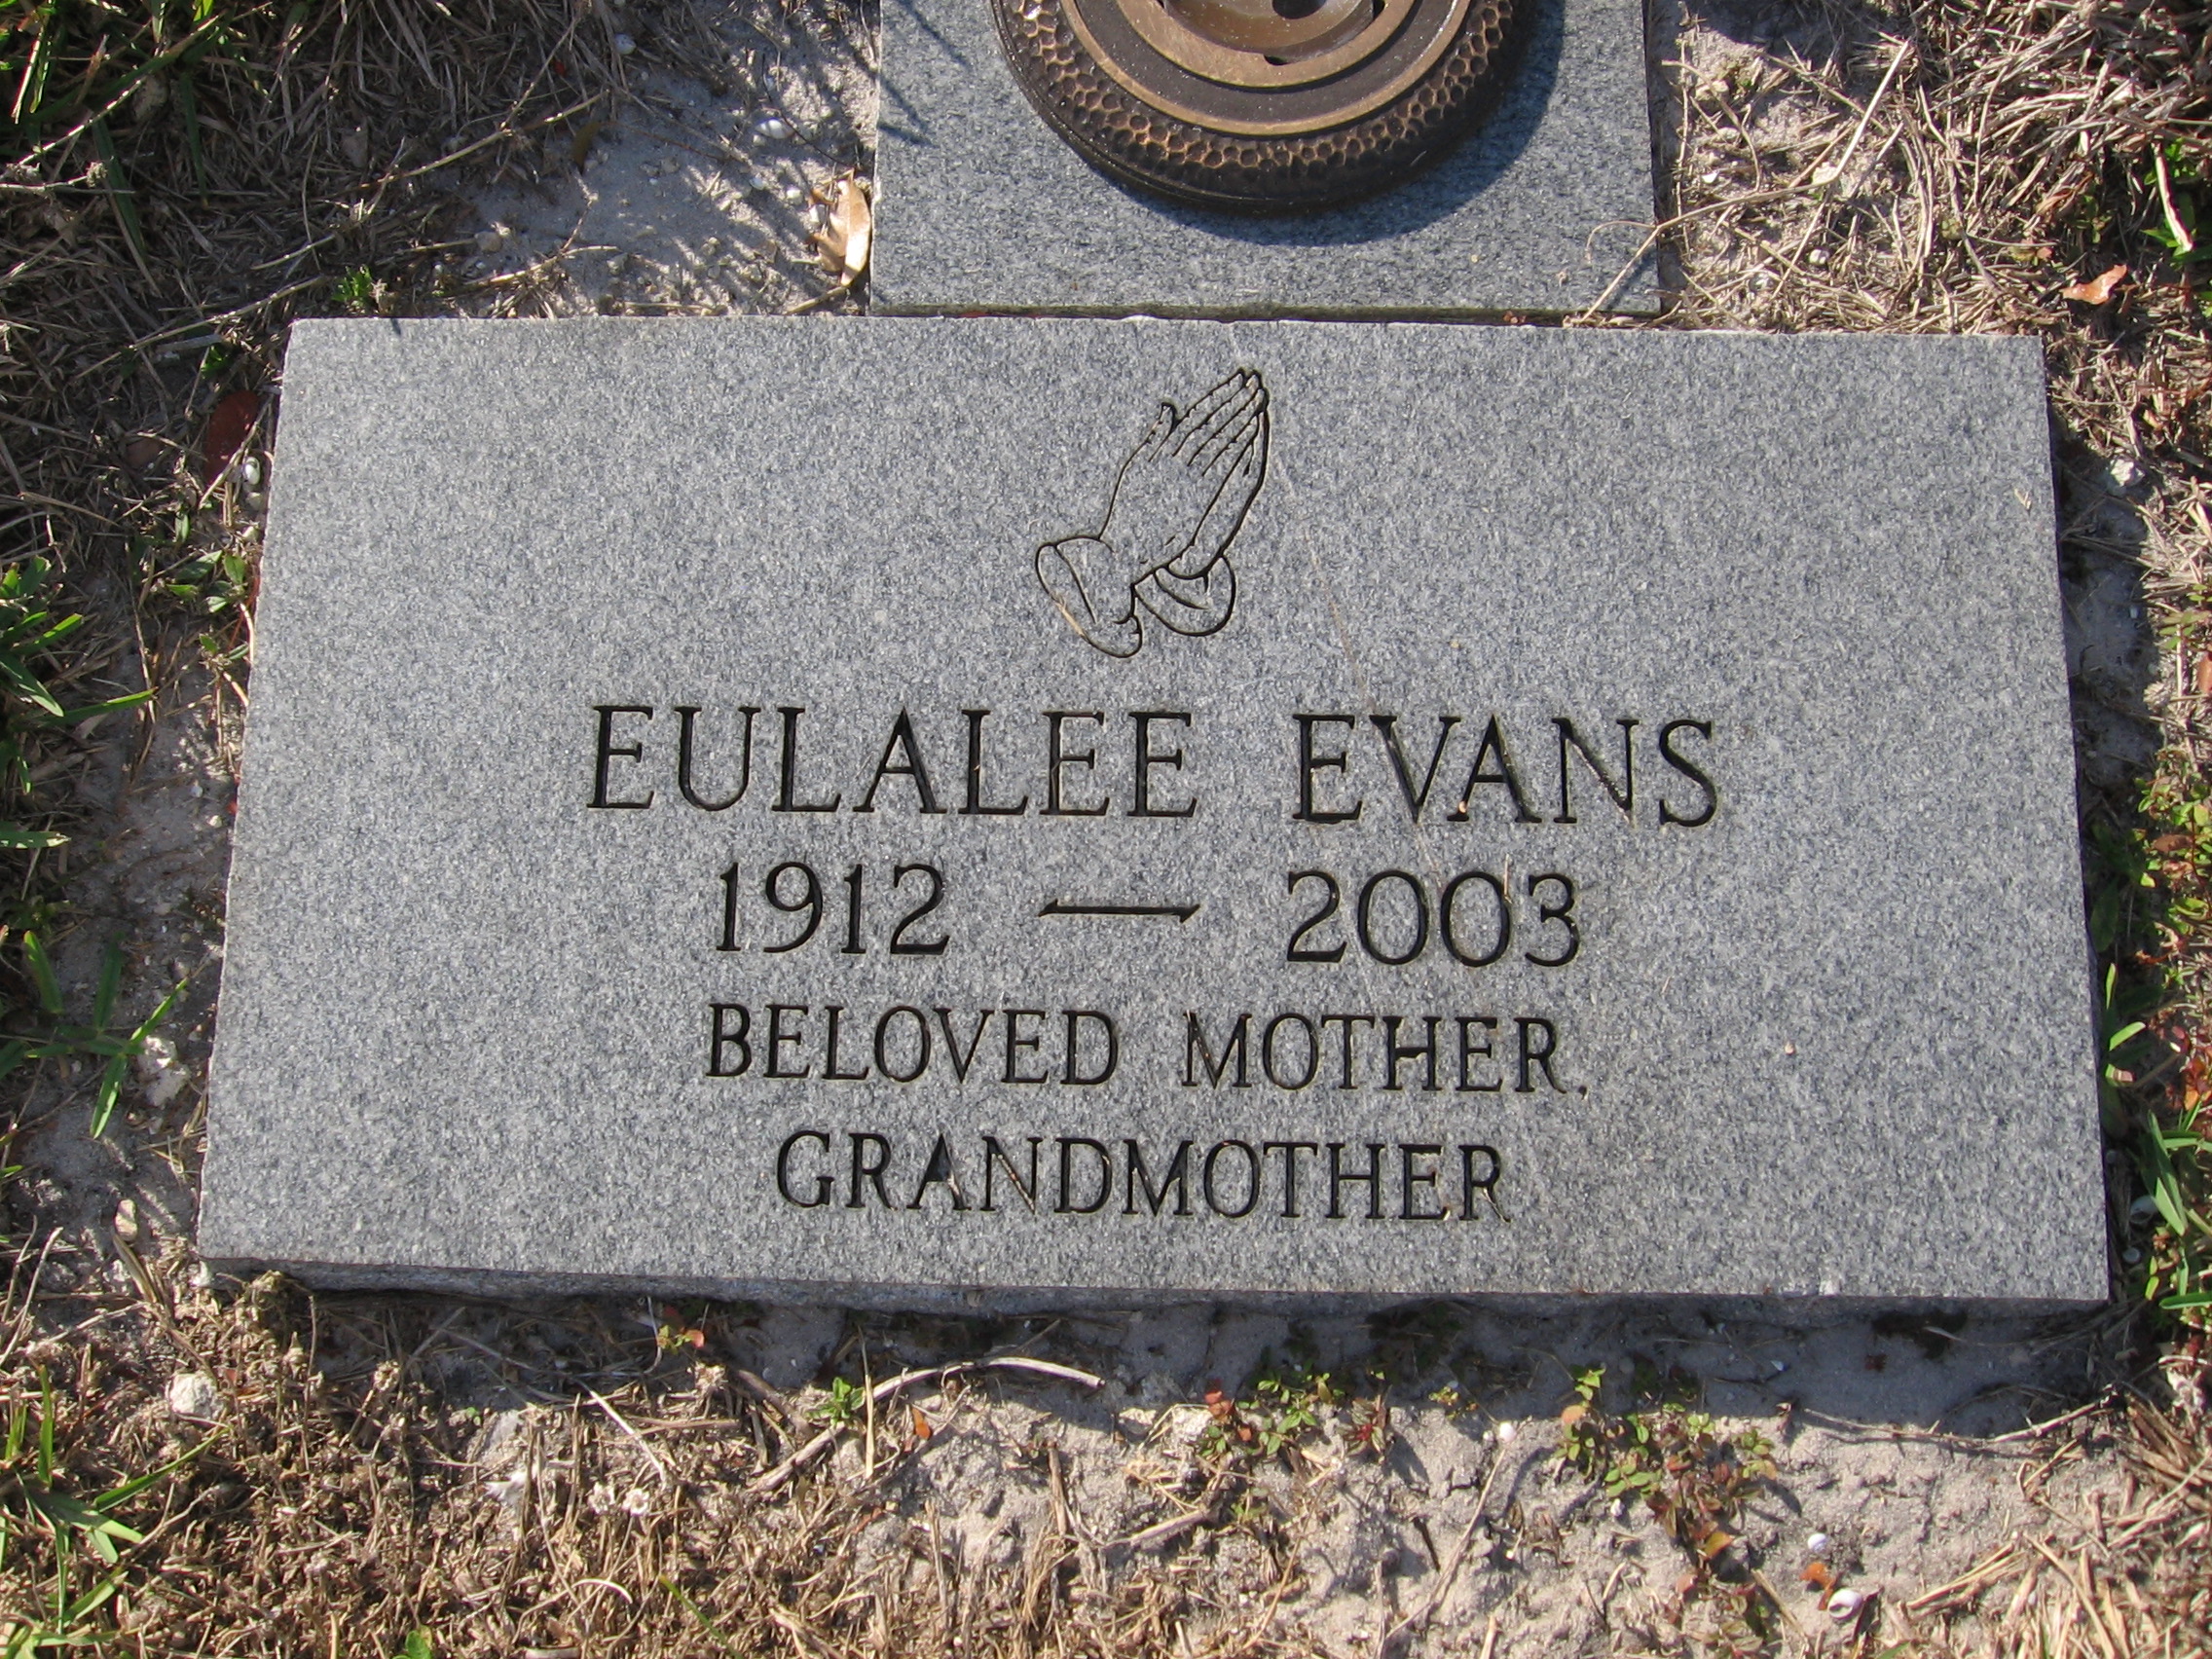 Eulalee Evans